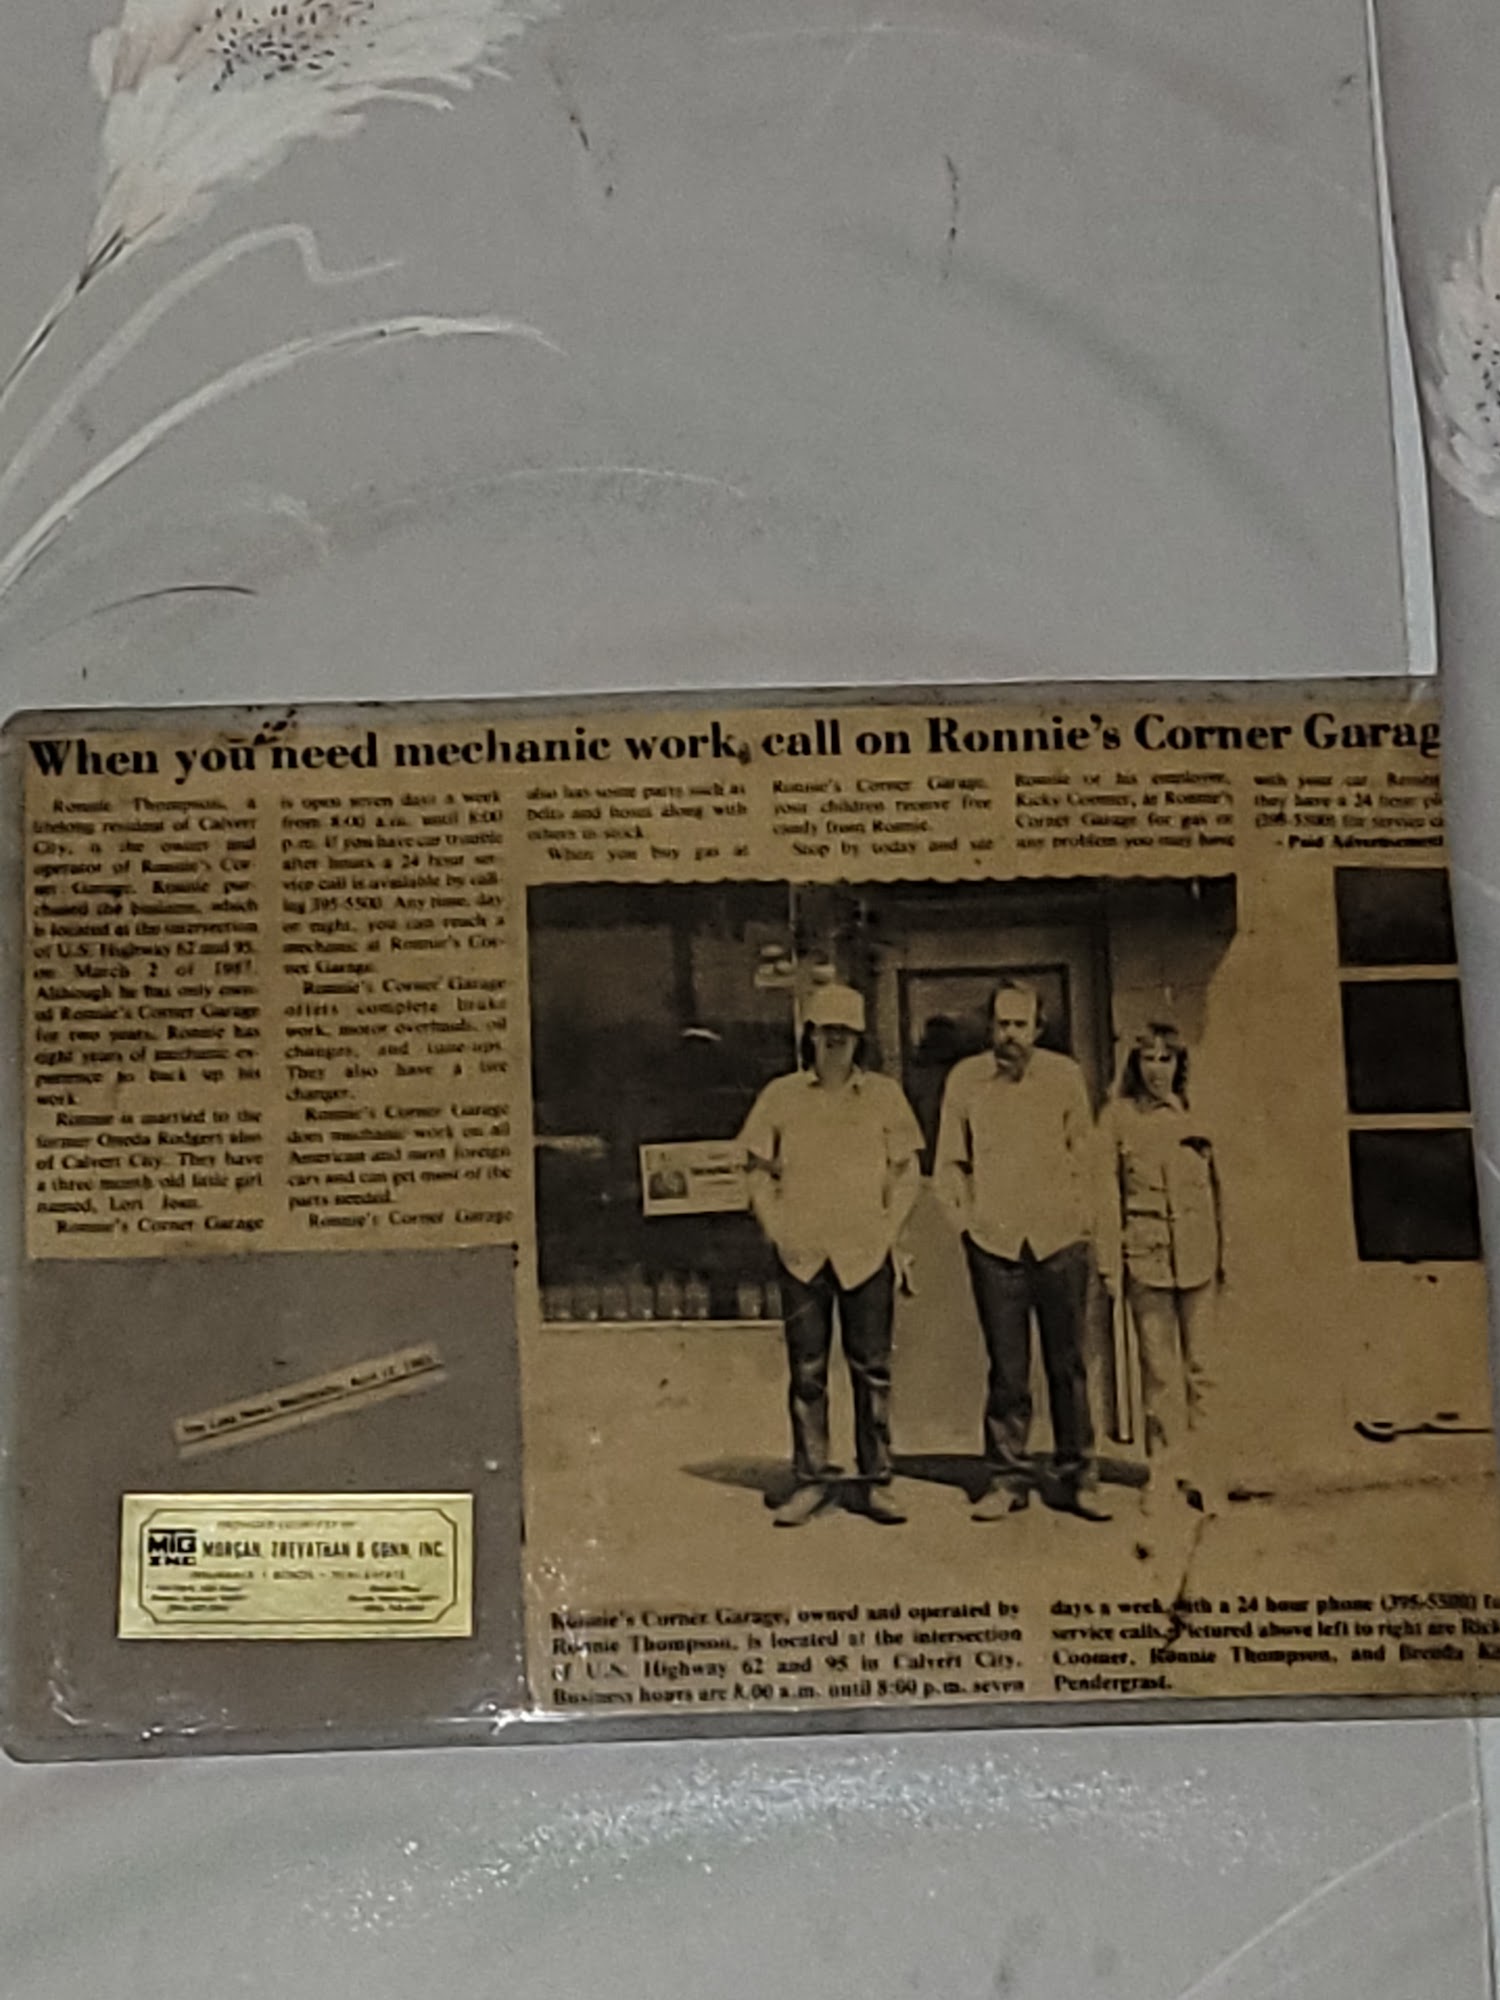 Ronnie's Corner Garage